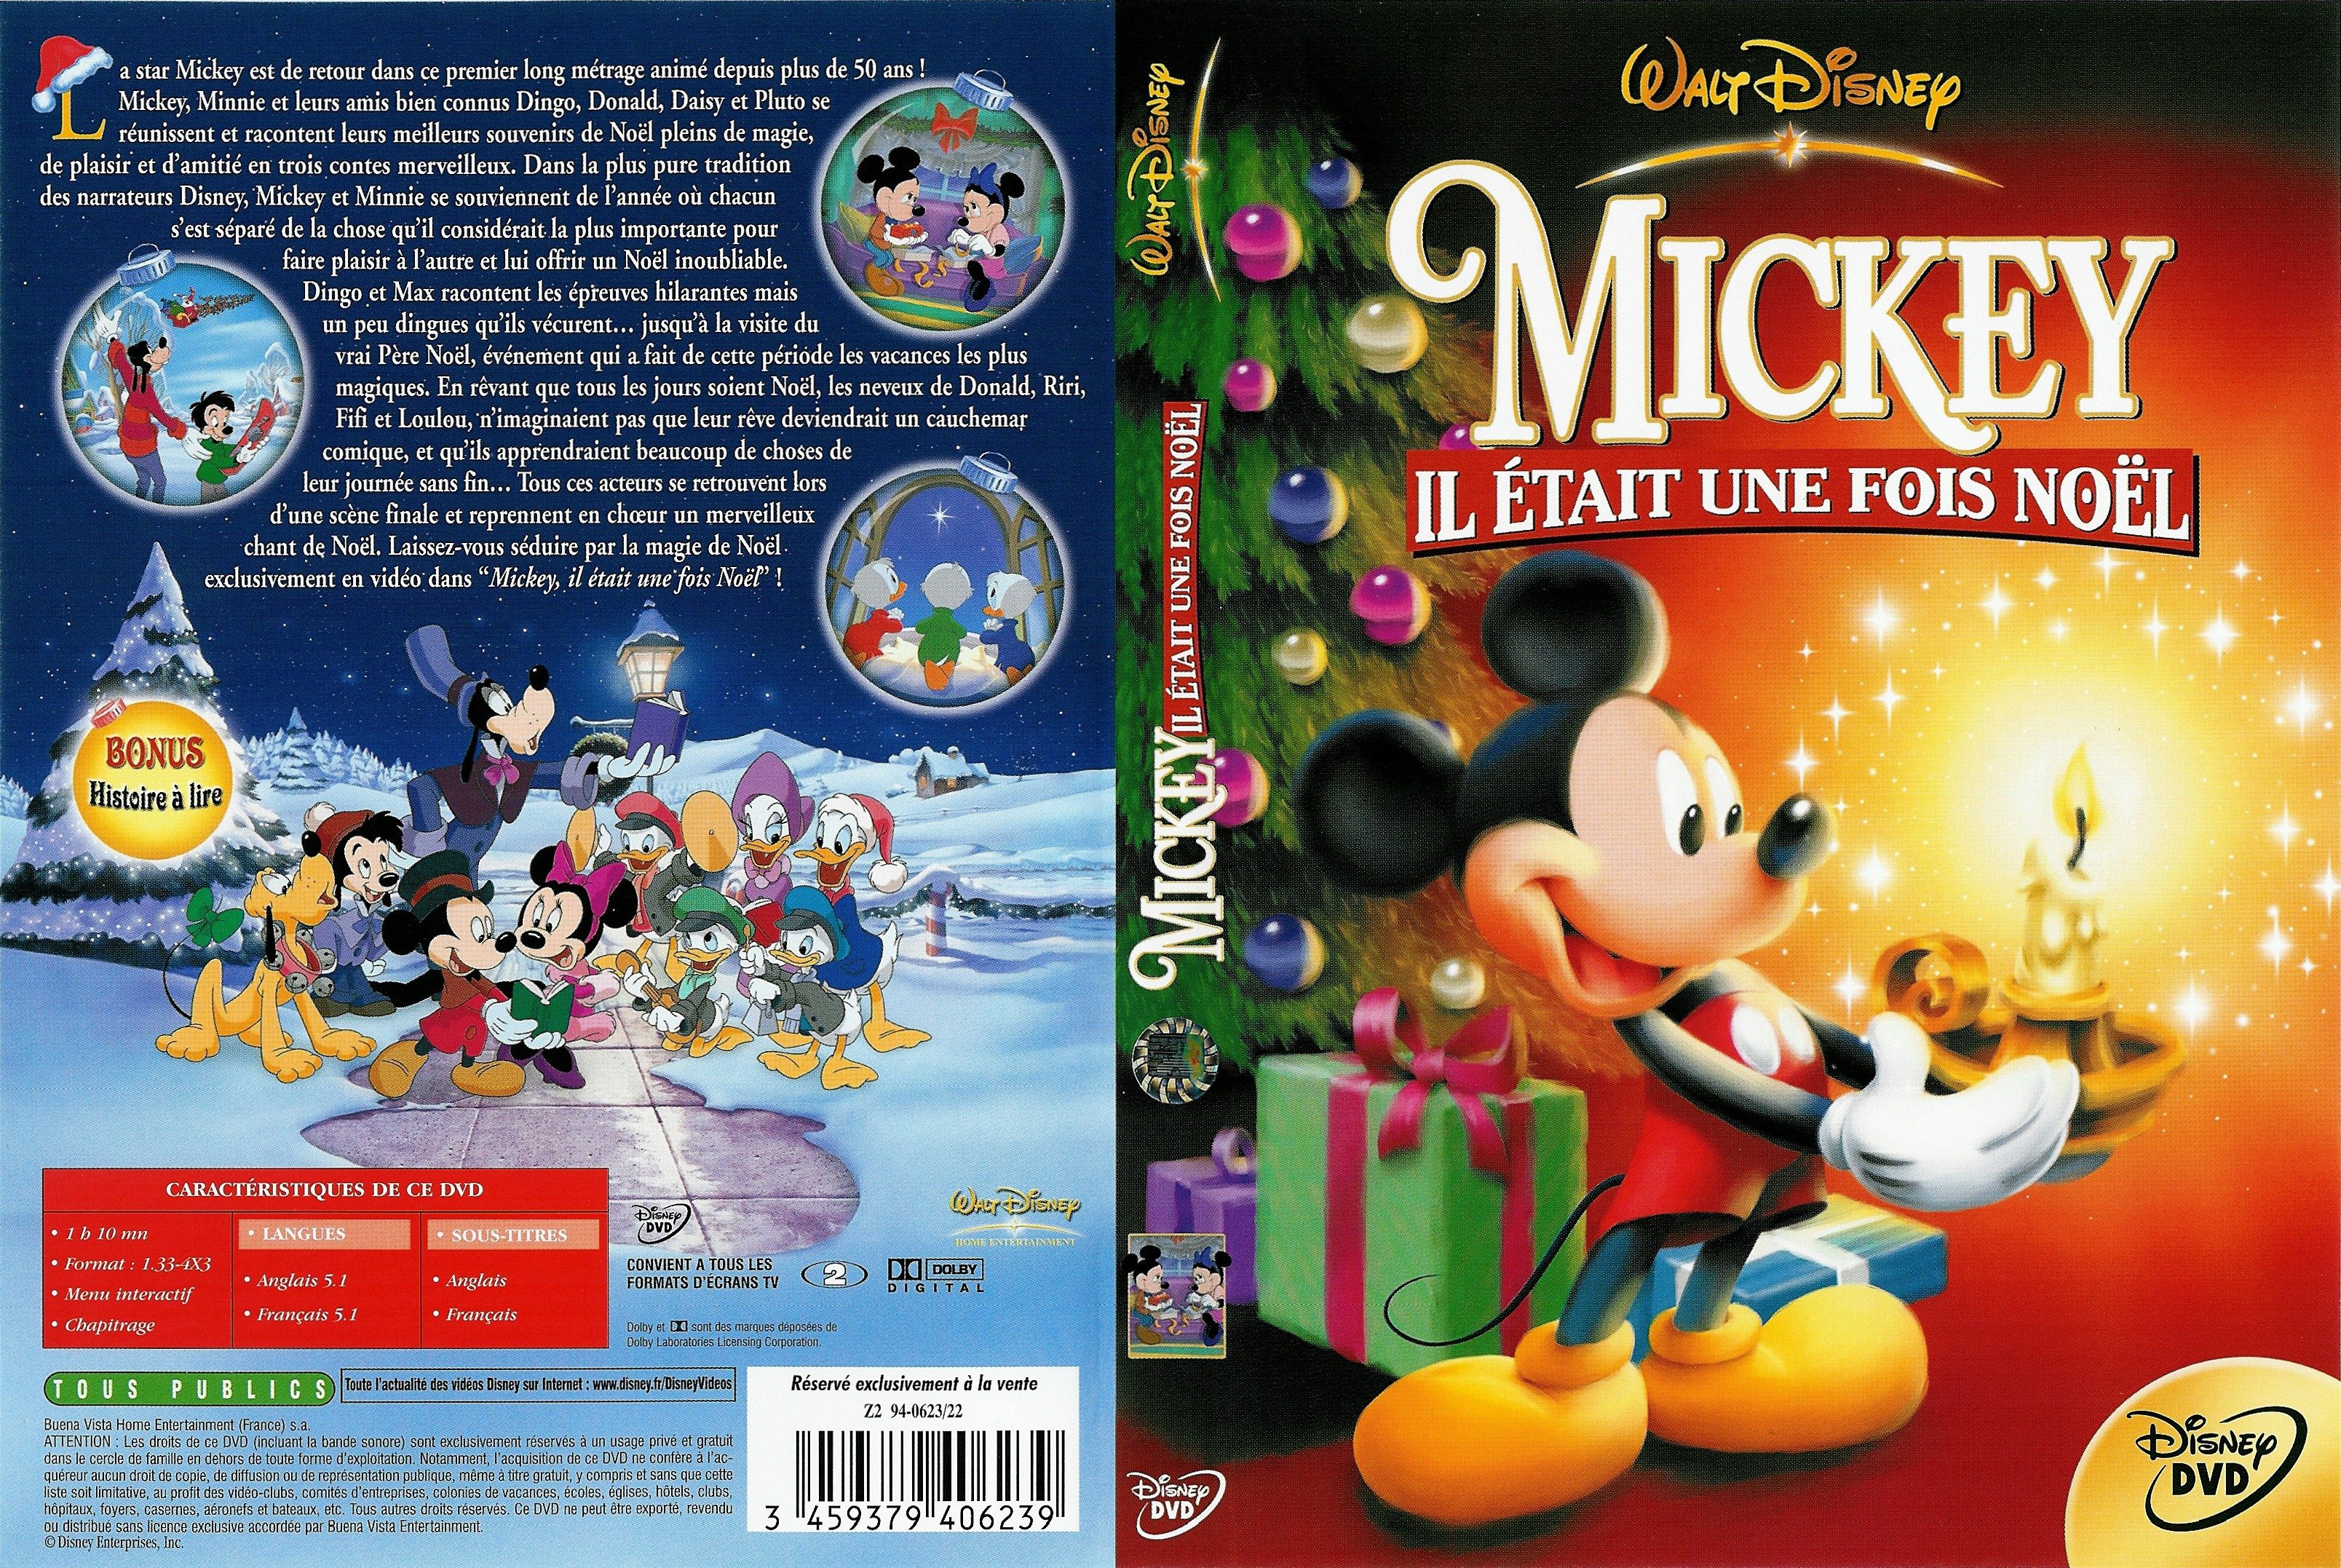 Jaquette DVD Mickey il etait une fois noel